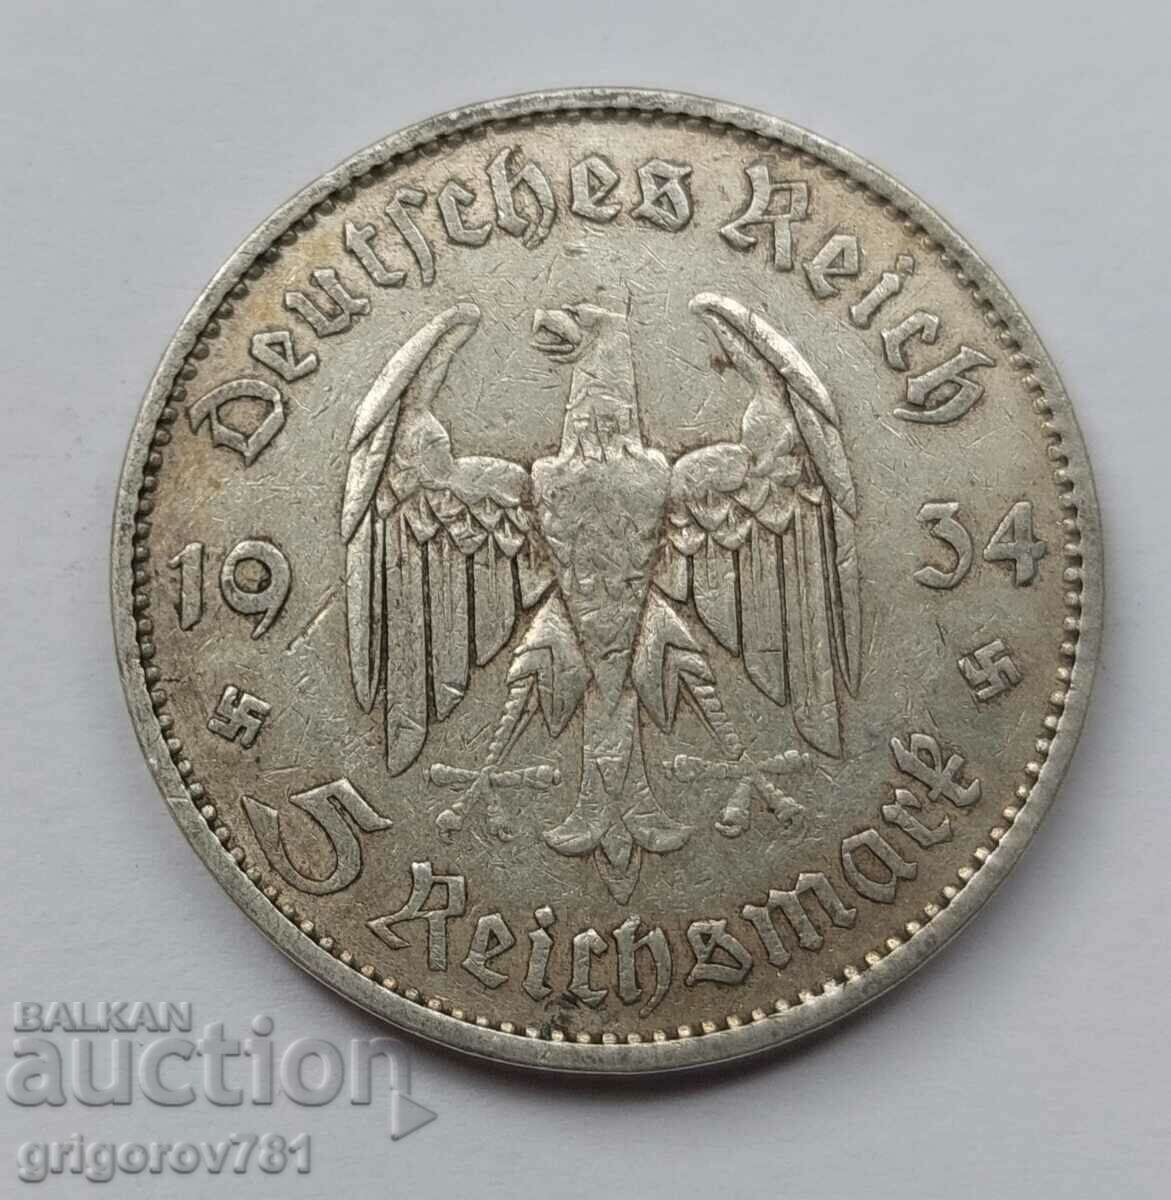 5 Mark Silver Γερμανία 1934 A III Reich Silver Coin #6